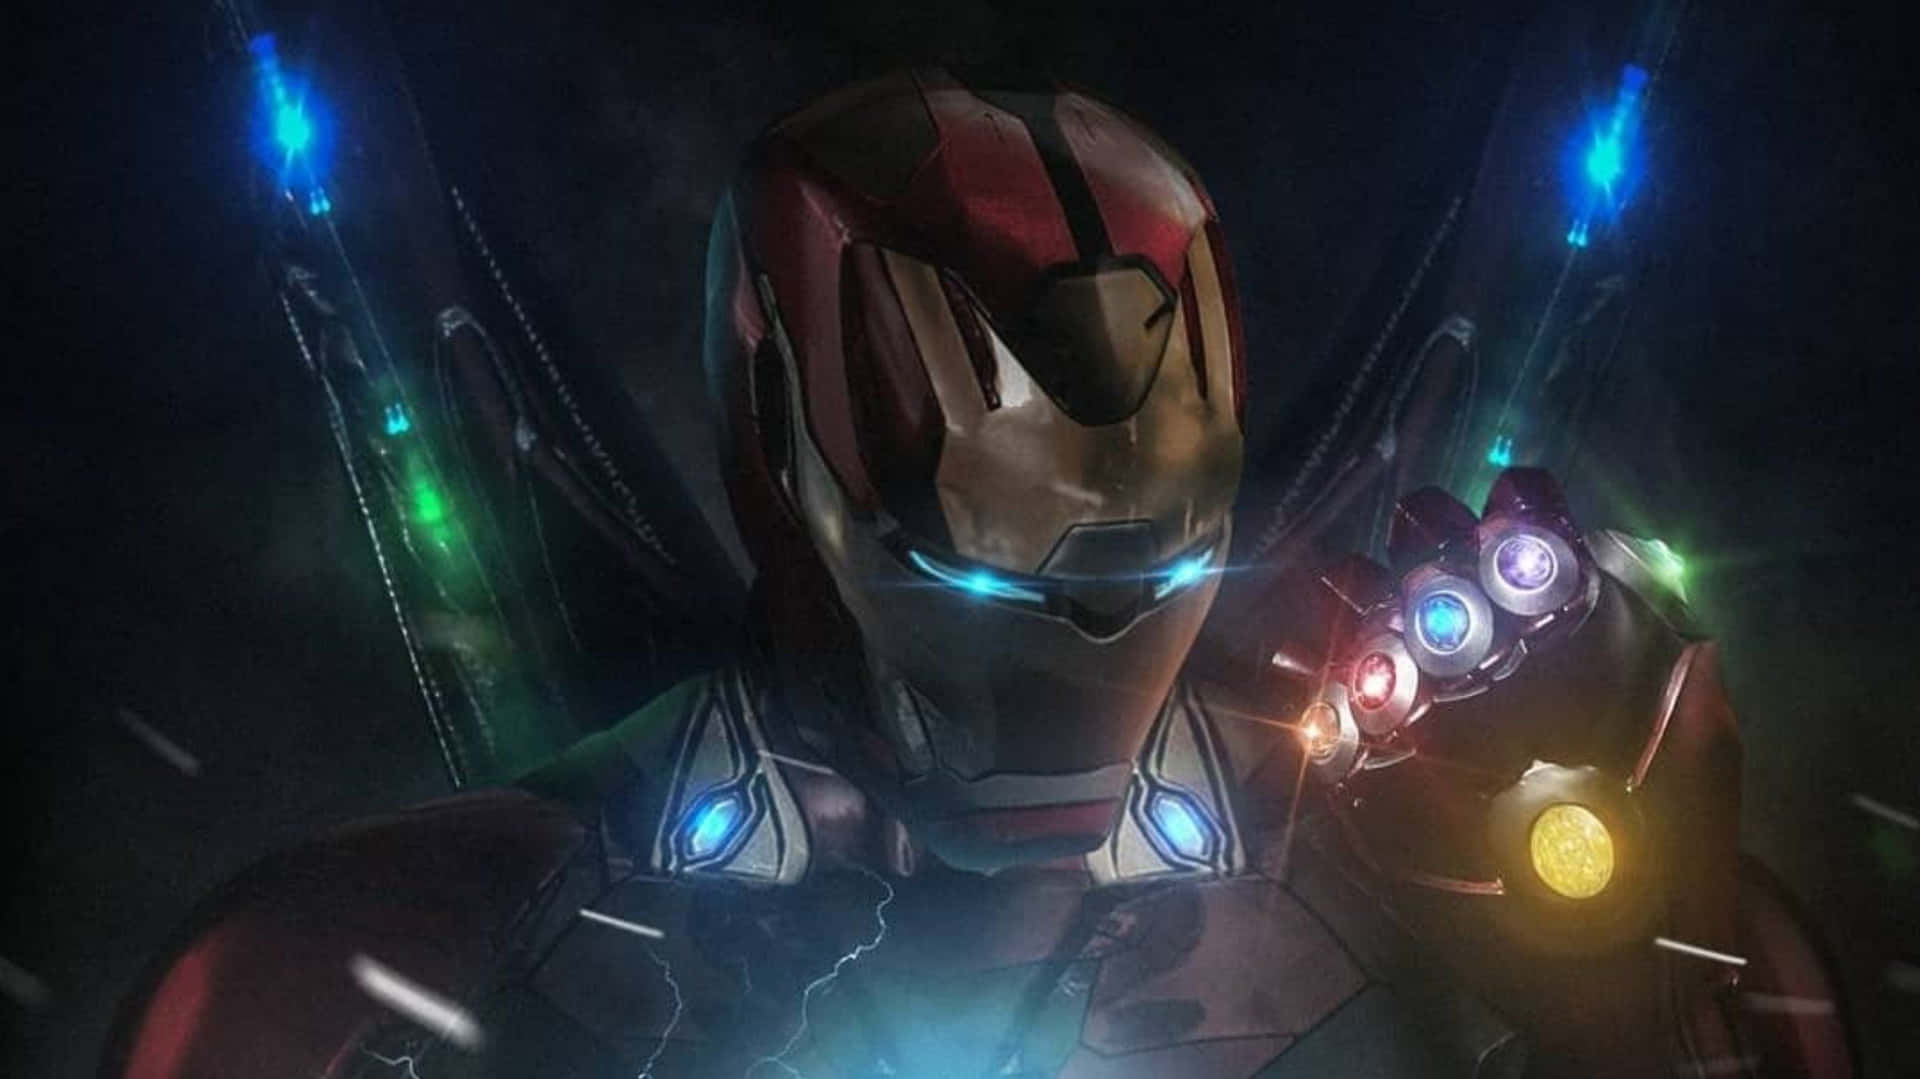 Tony Stark, direktør for Stark Industries og arkitekt af Iron Man-dragten - holder verden sikker. Wallpaper